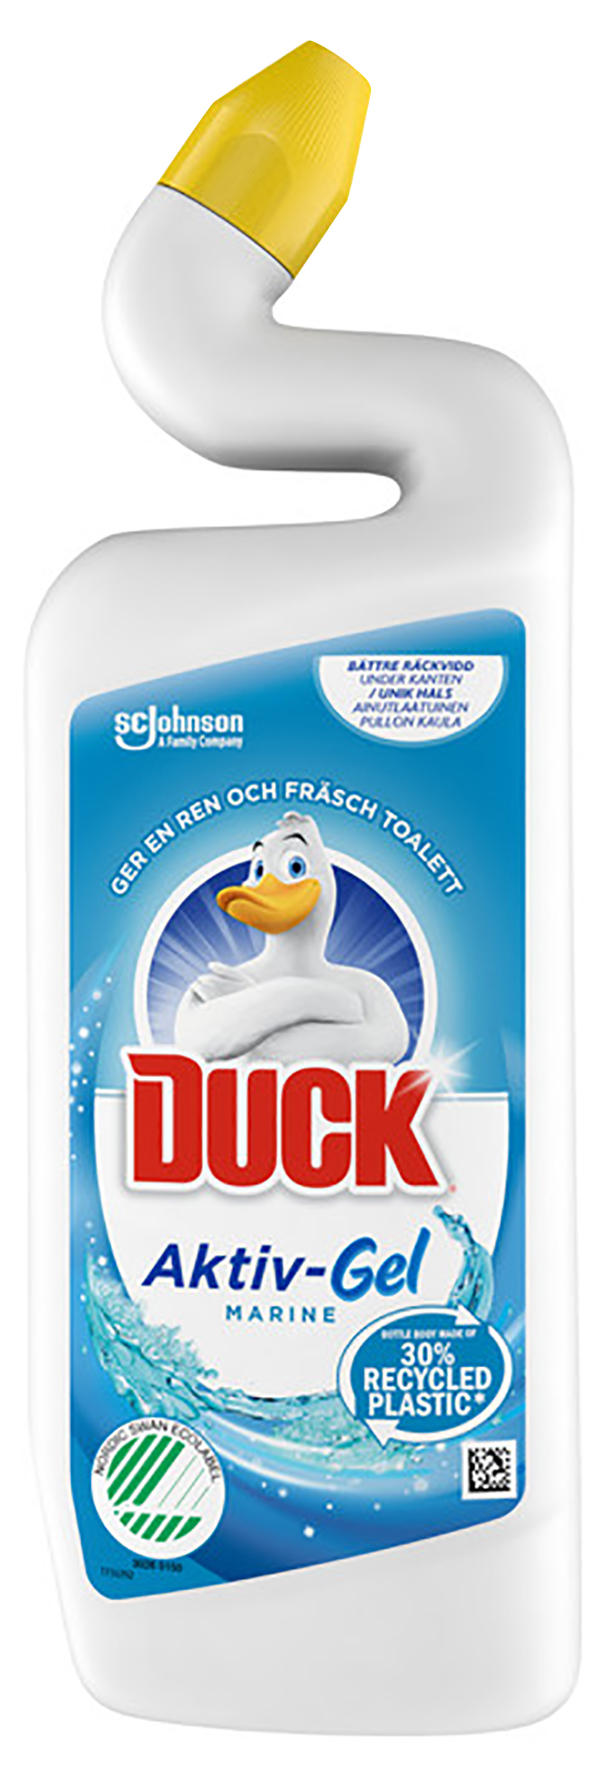 [8557119] Duck Aktiv-Gel Marine 750 ml